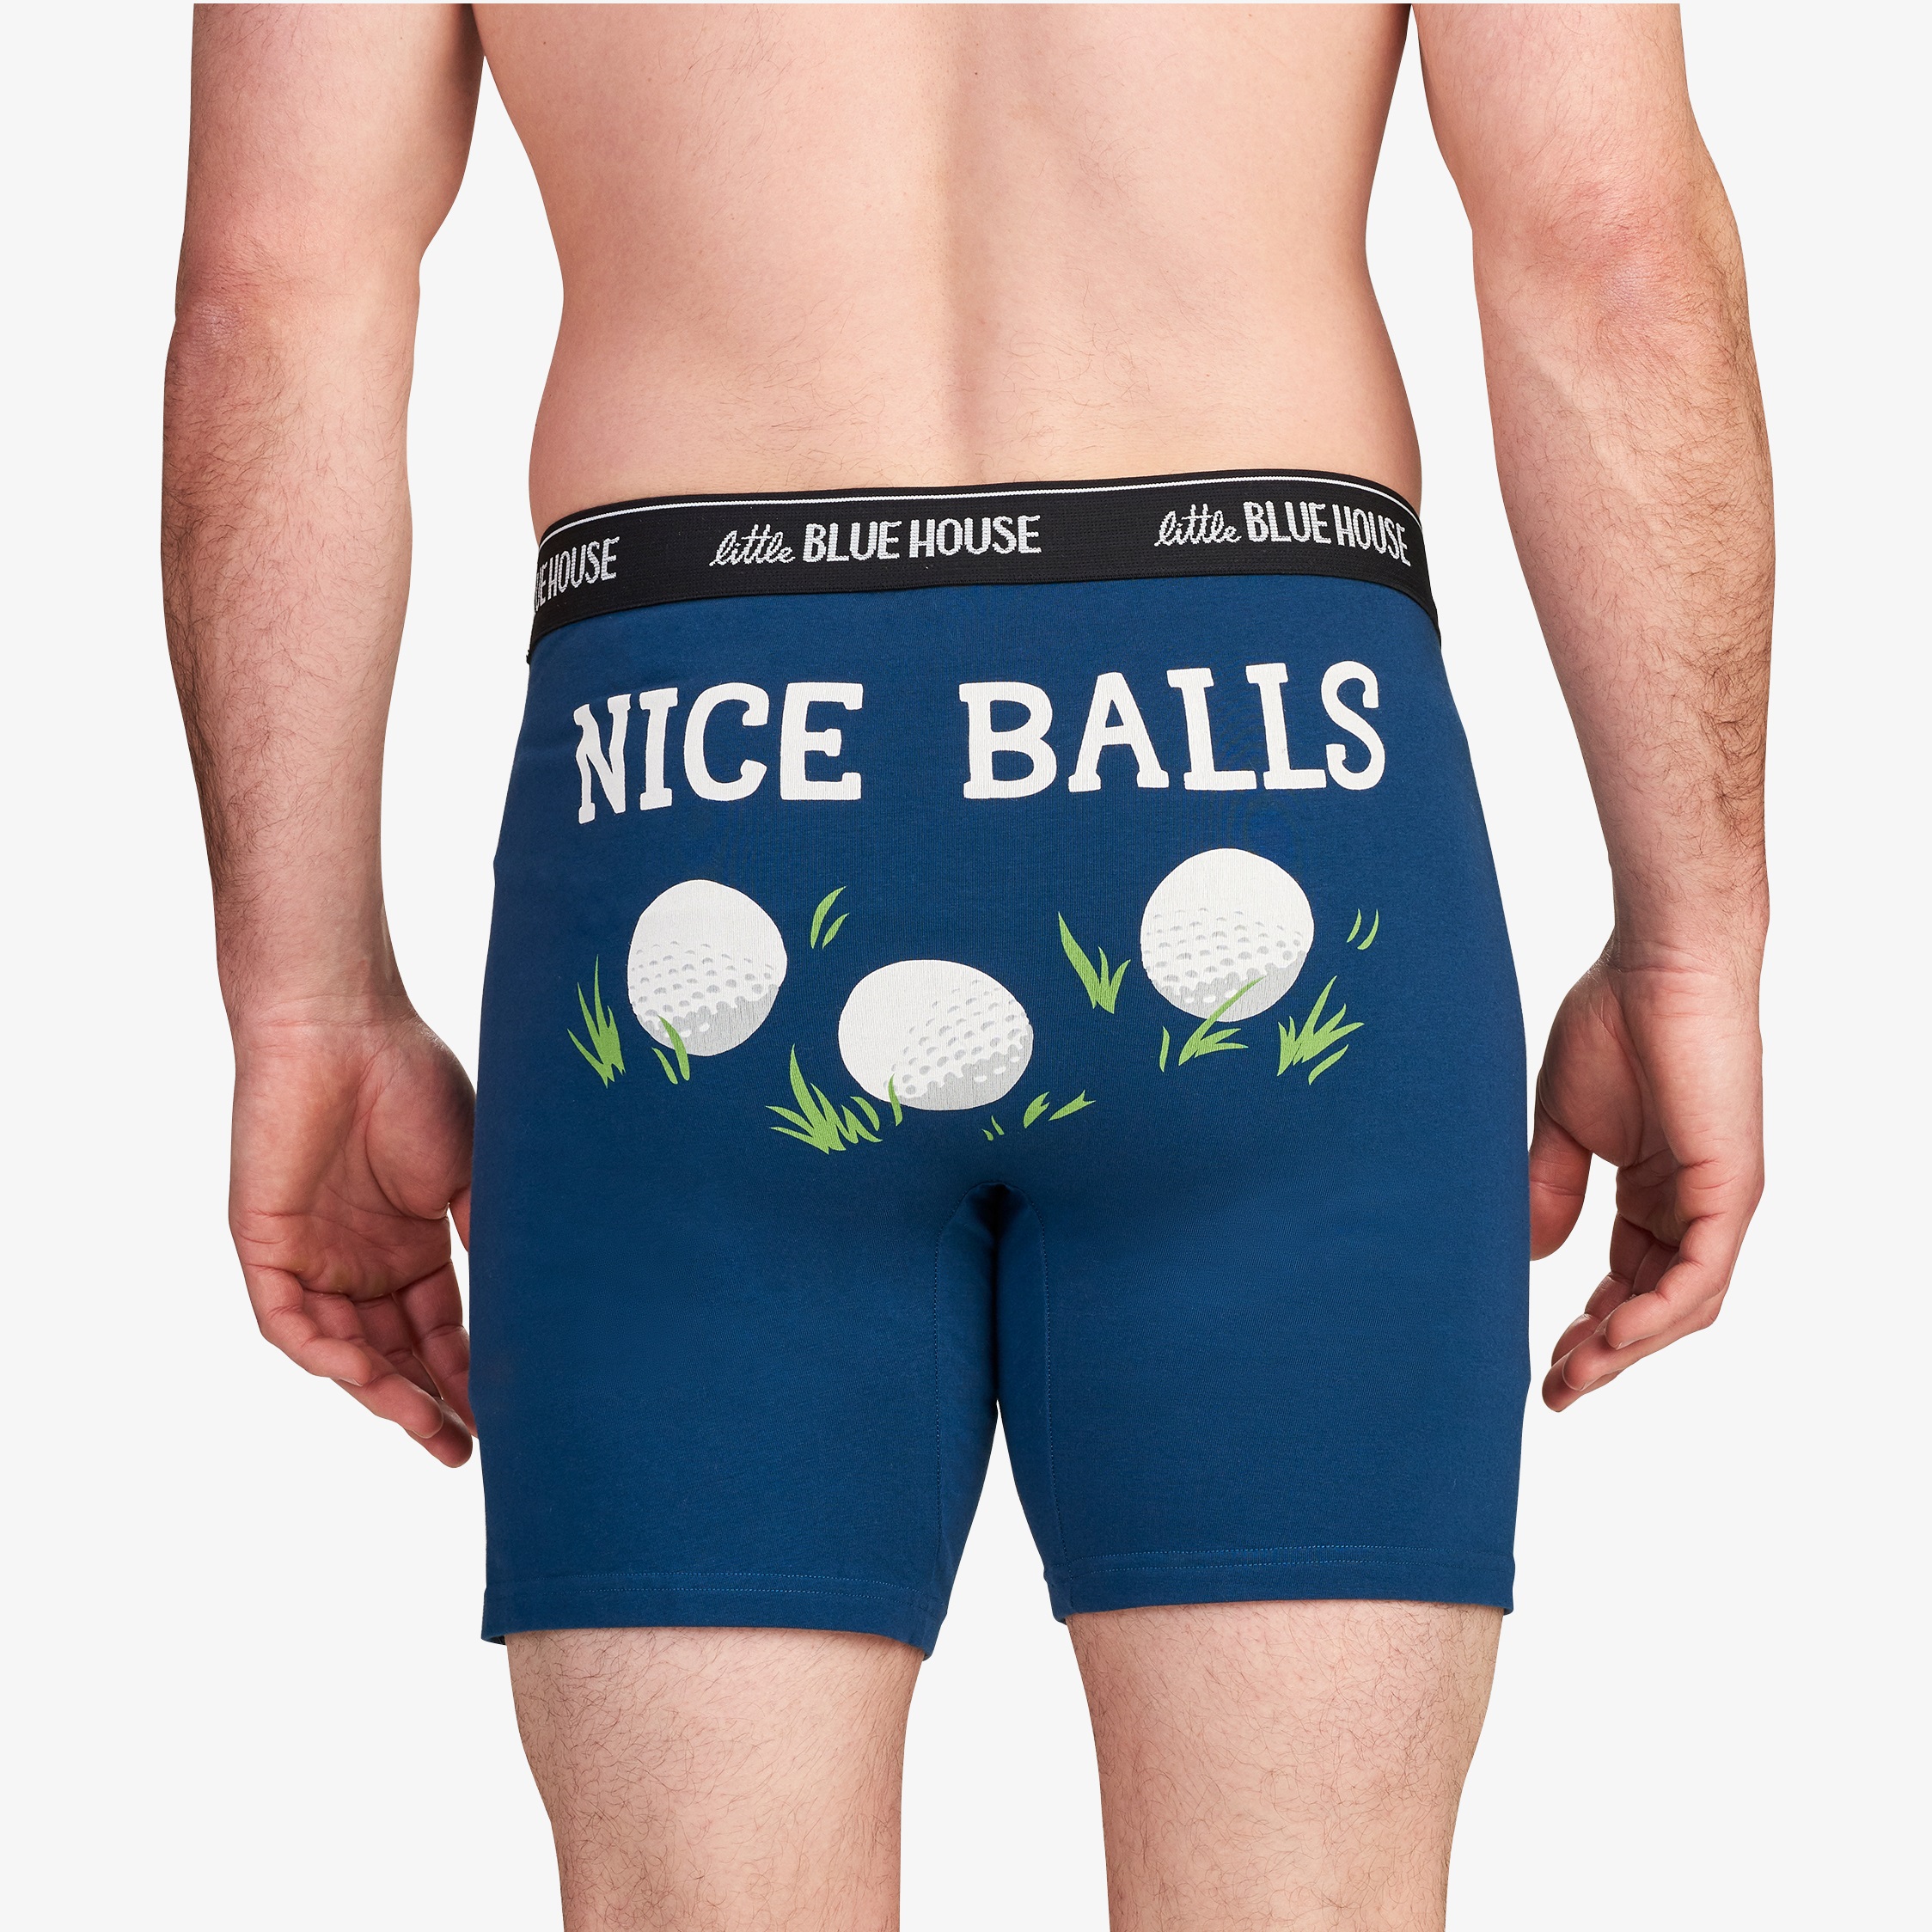 Nice Golf Balls Men's Boxer Briefs Underwear by Hatley 